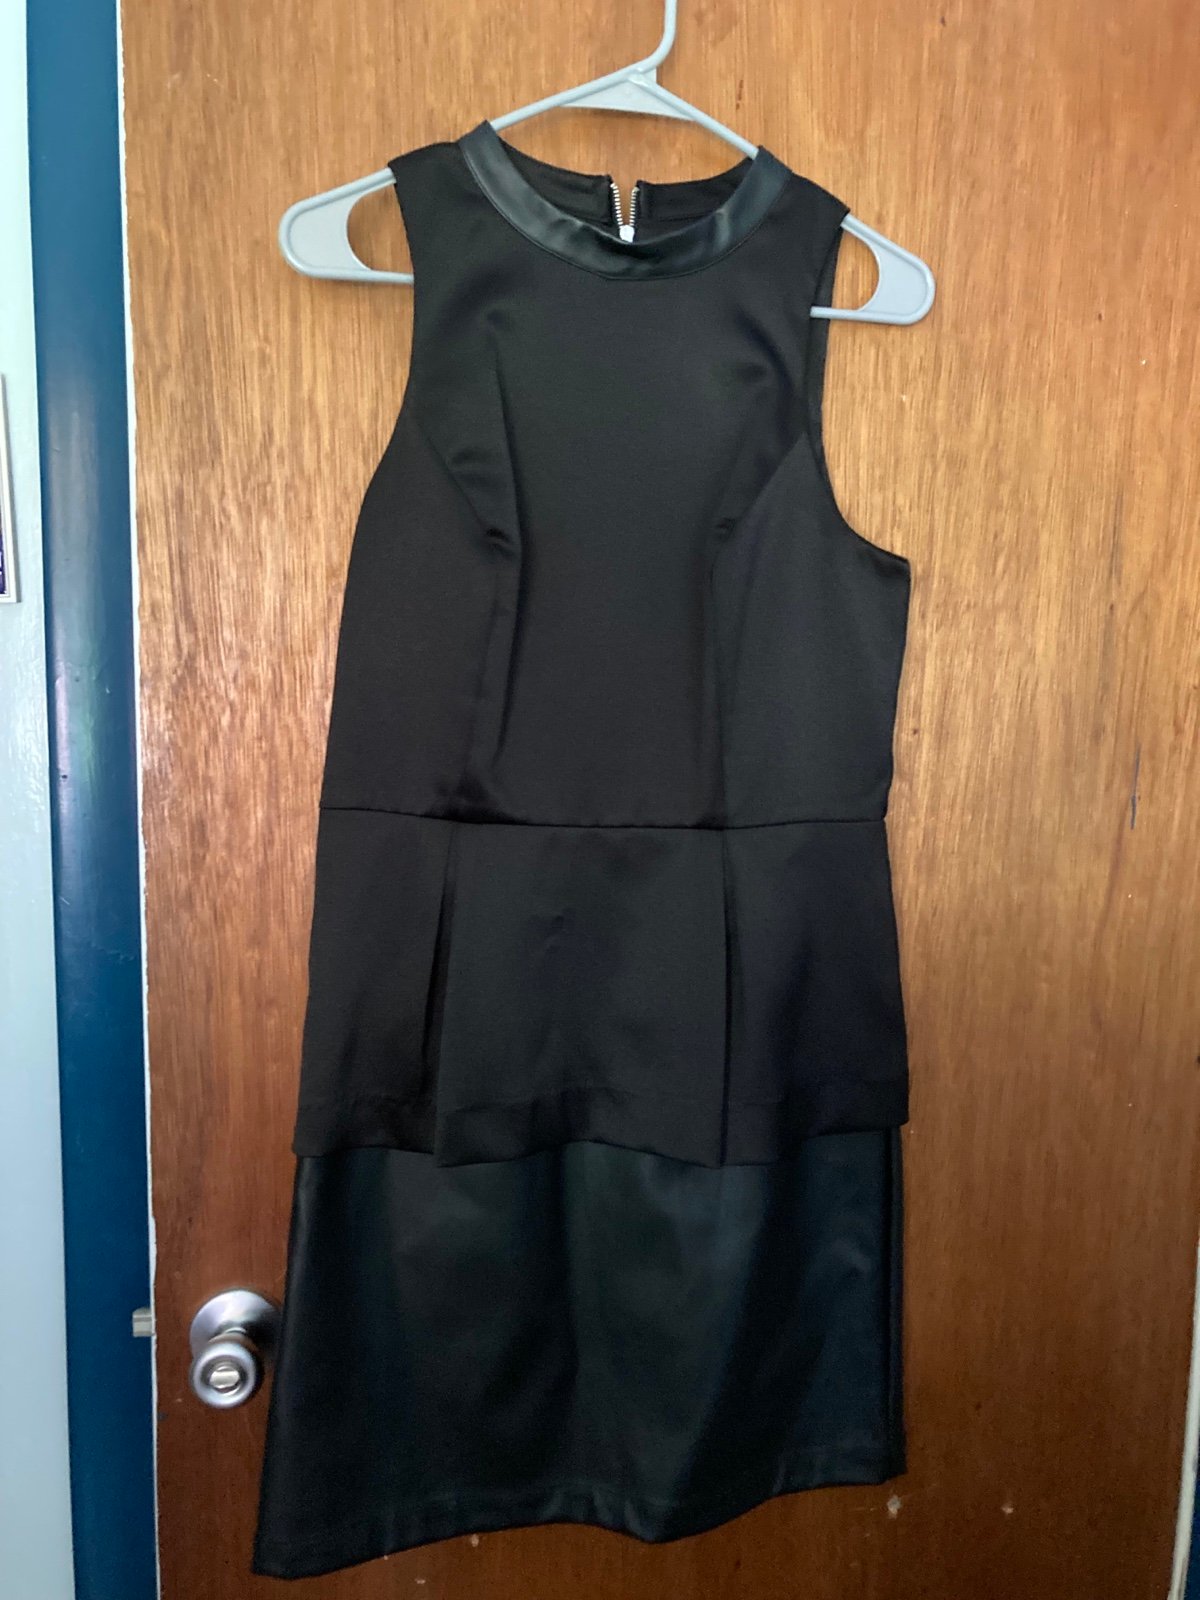 Authentic Nice black Kensie dress- size 6 NQjOoBjmx US Sale